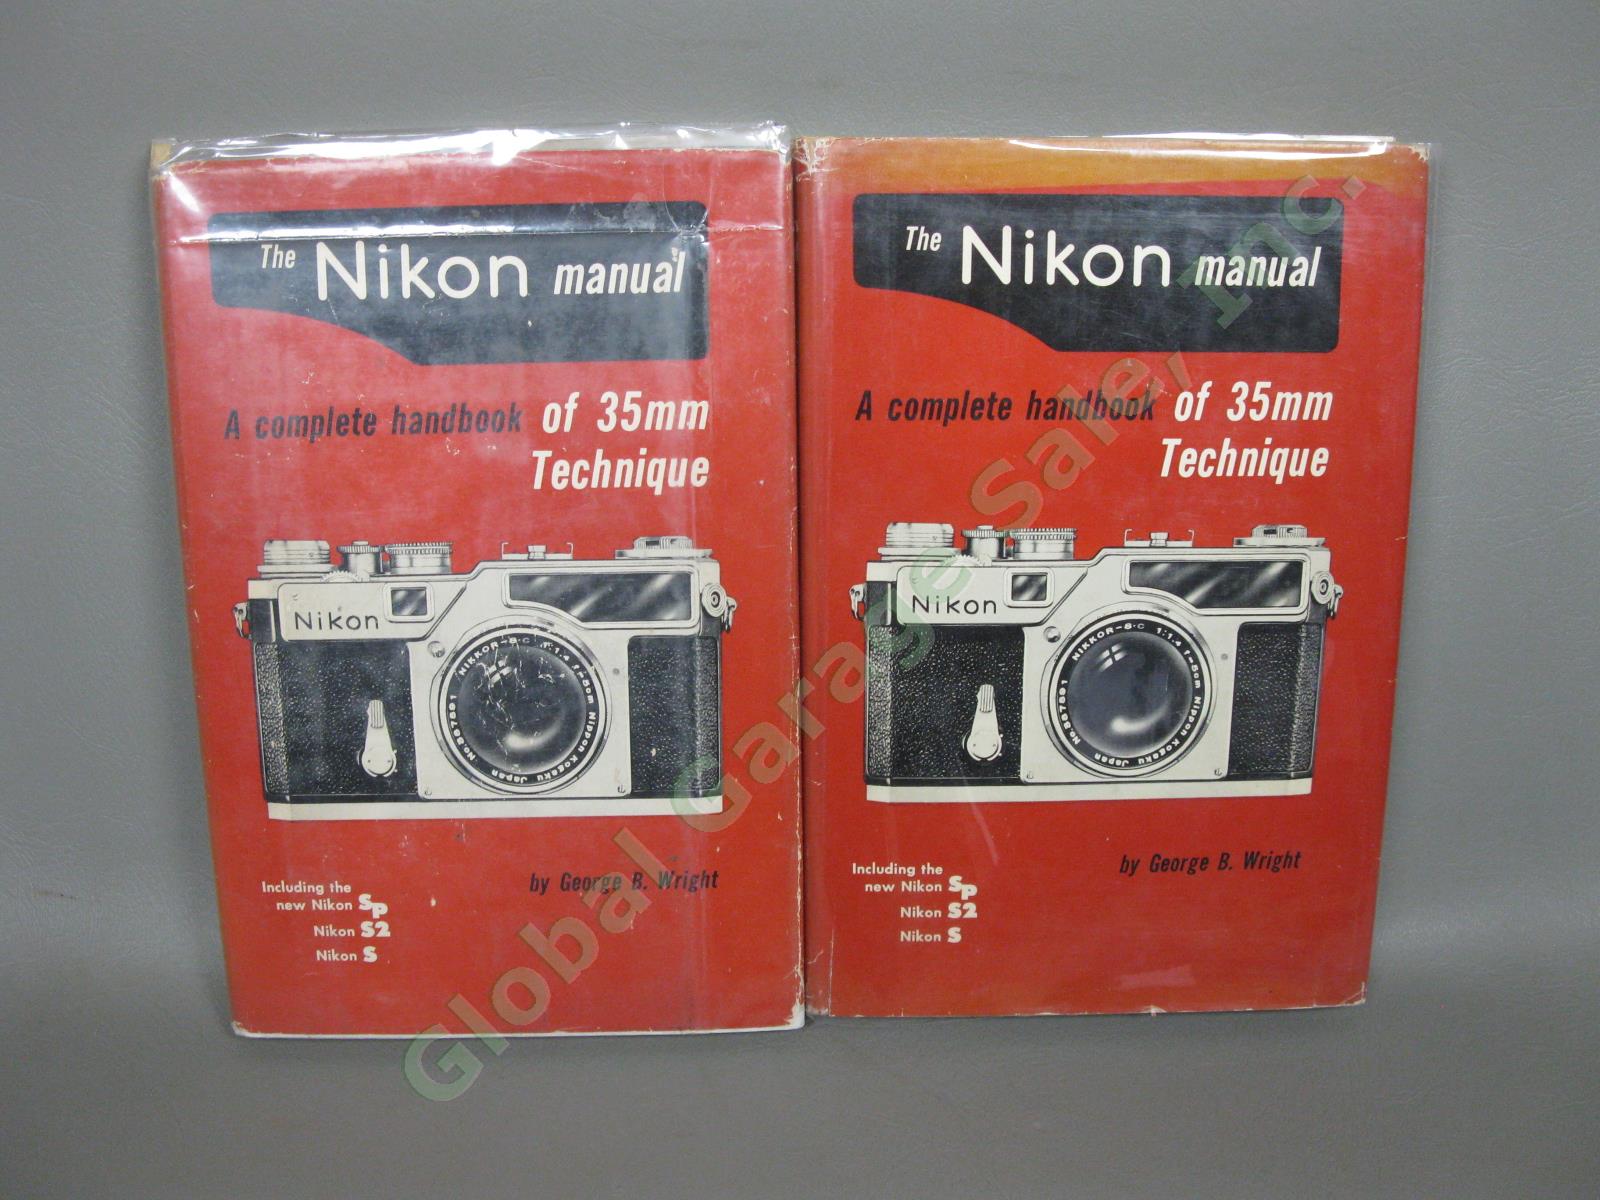 VTG Nikon Film Camera Books Manuals & Rangefinder Illustrated History SIGNED NR 6